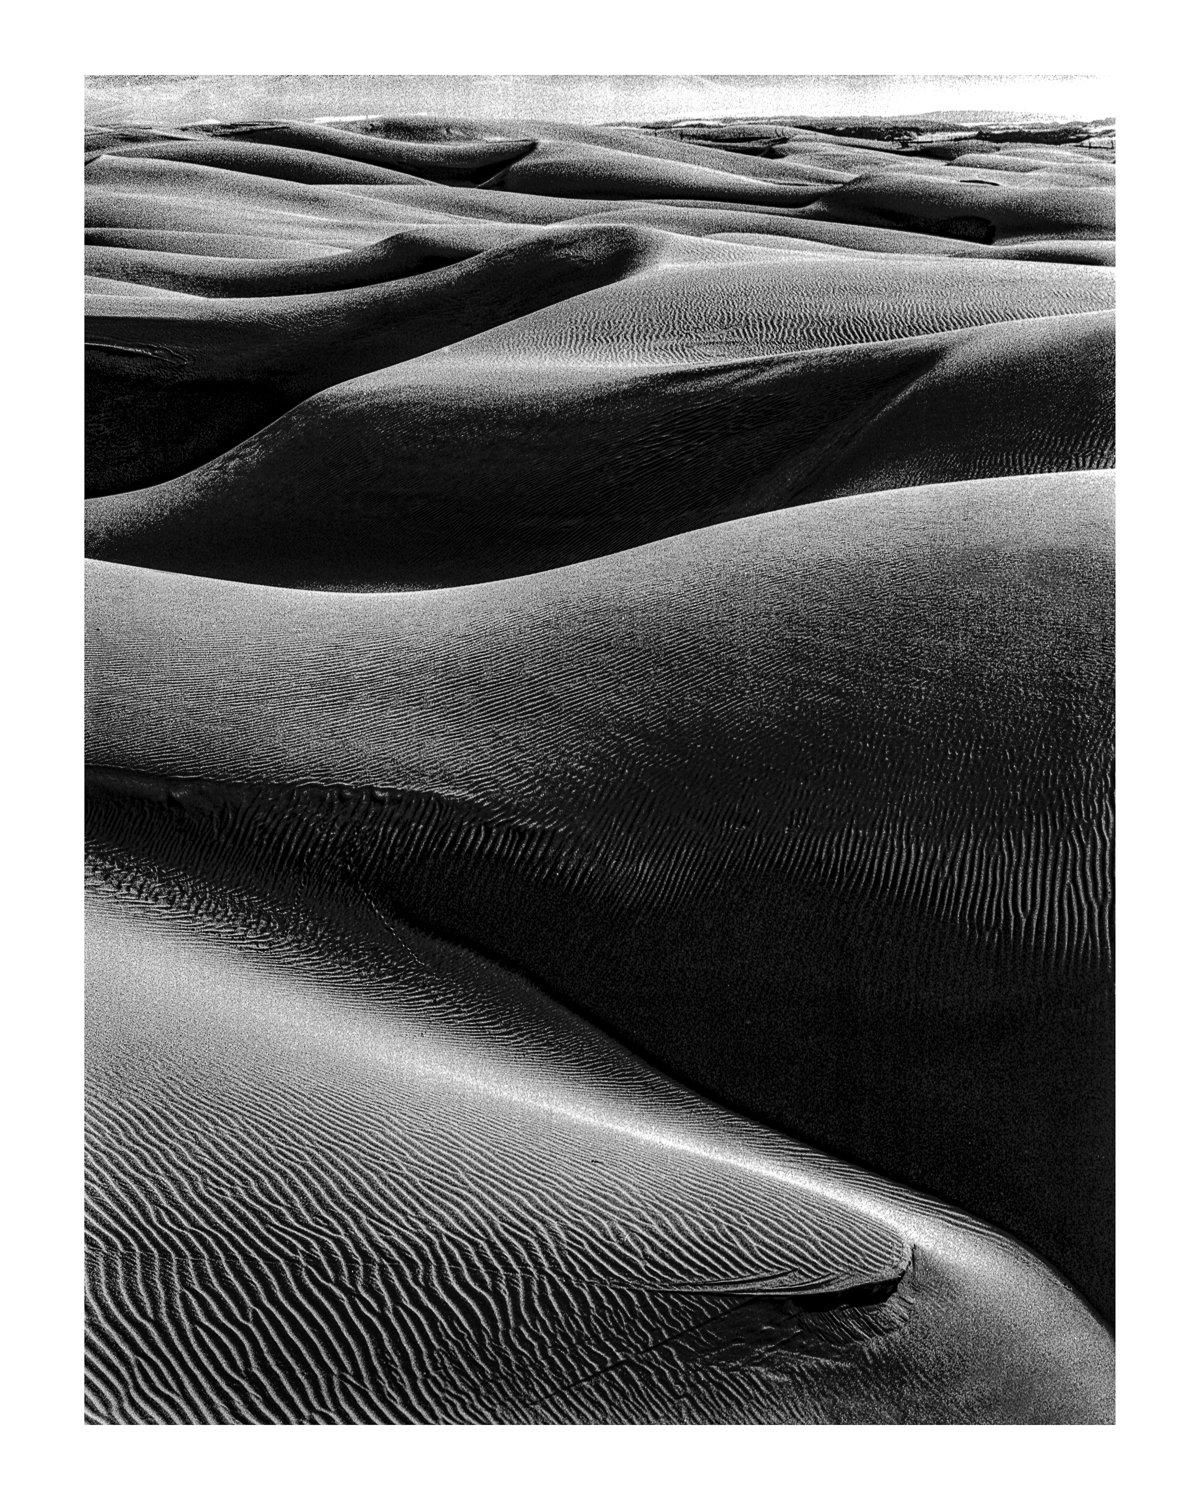 The Dunes 03